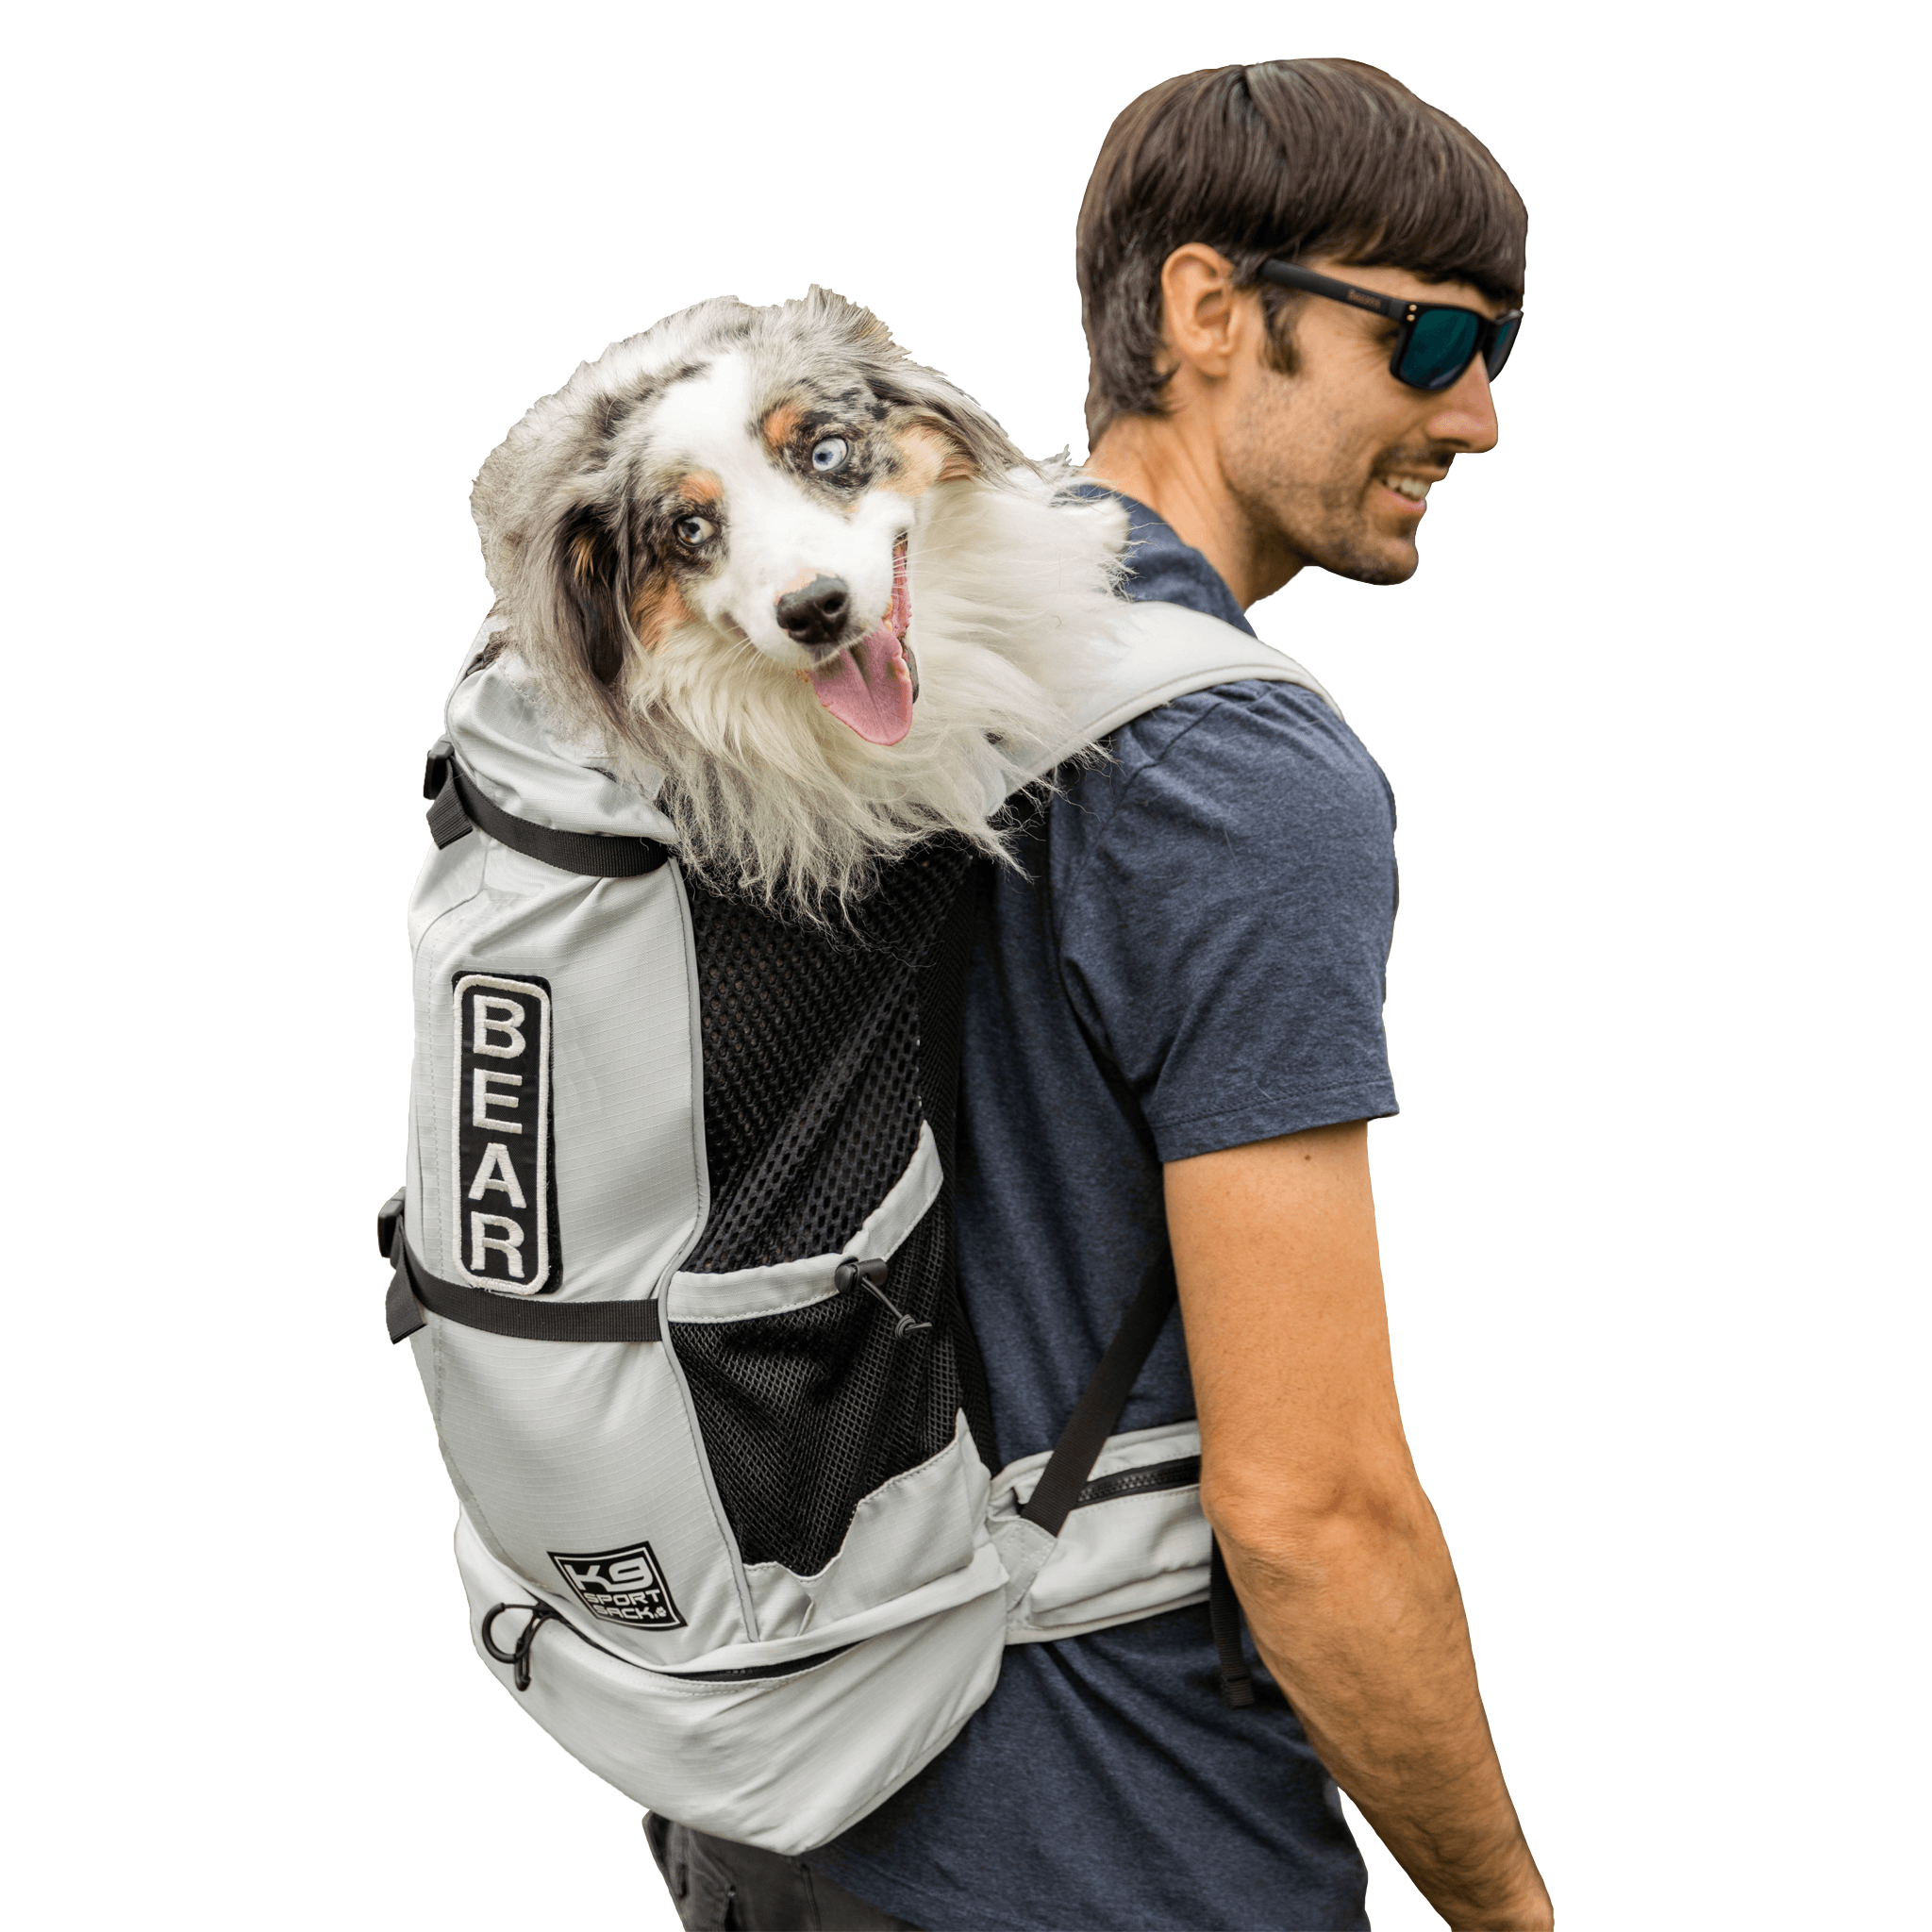 Knavigate lunar dog backpack carrier